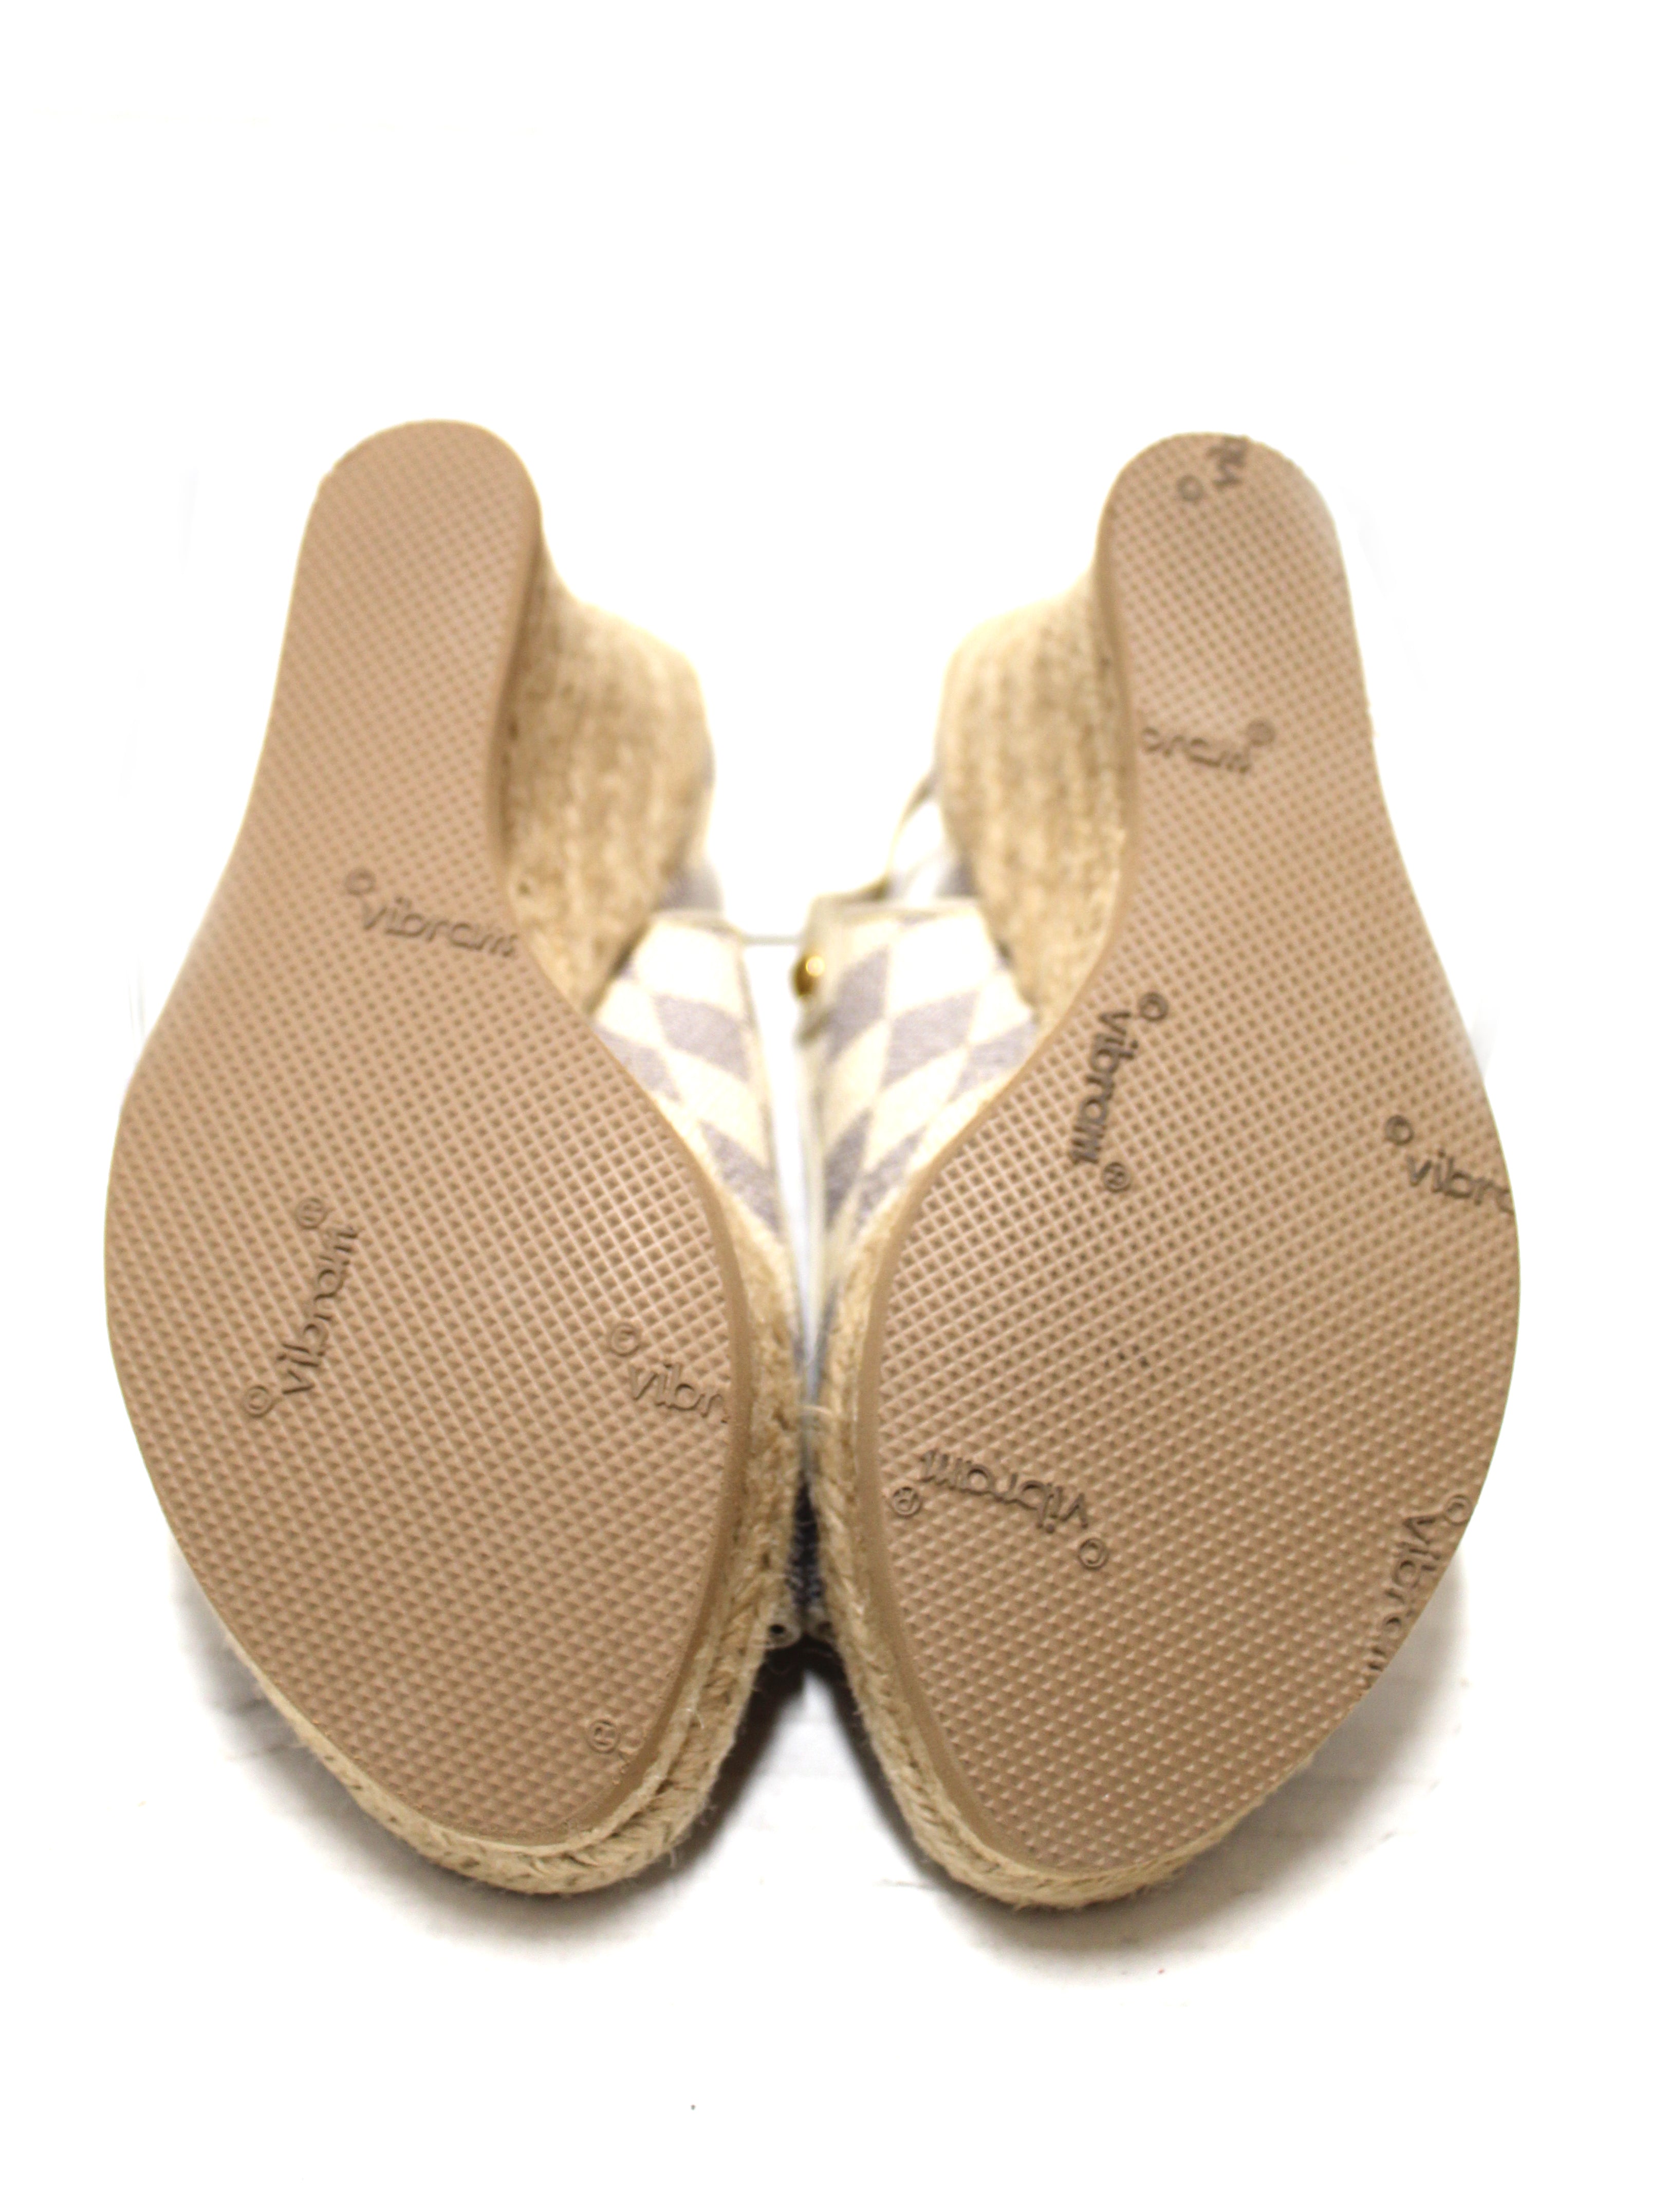 Louis Vuitton Damier Azur Wedge Sandals Size 38.5 Louis Vuitton